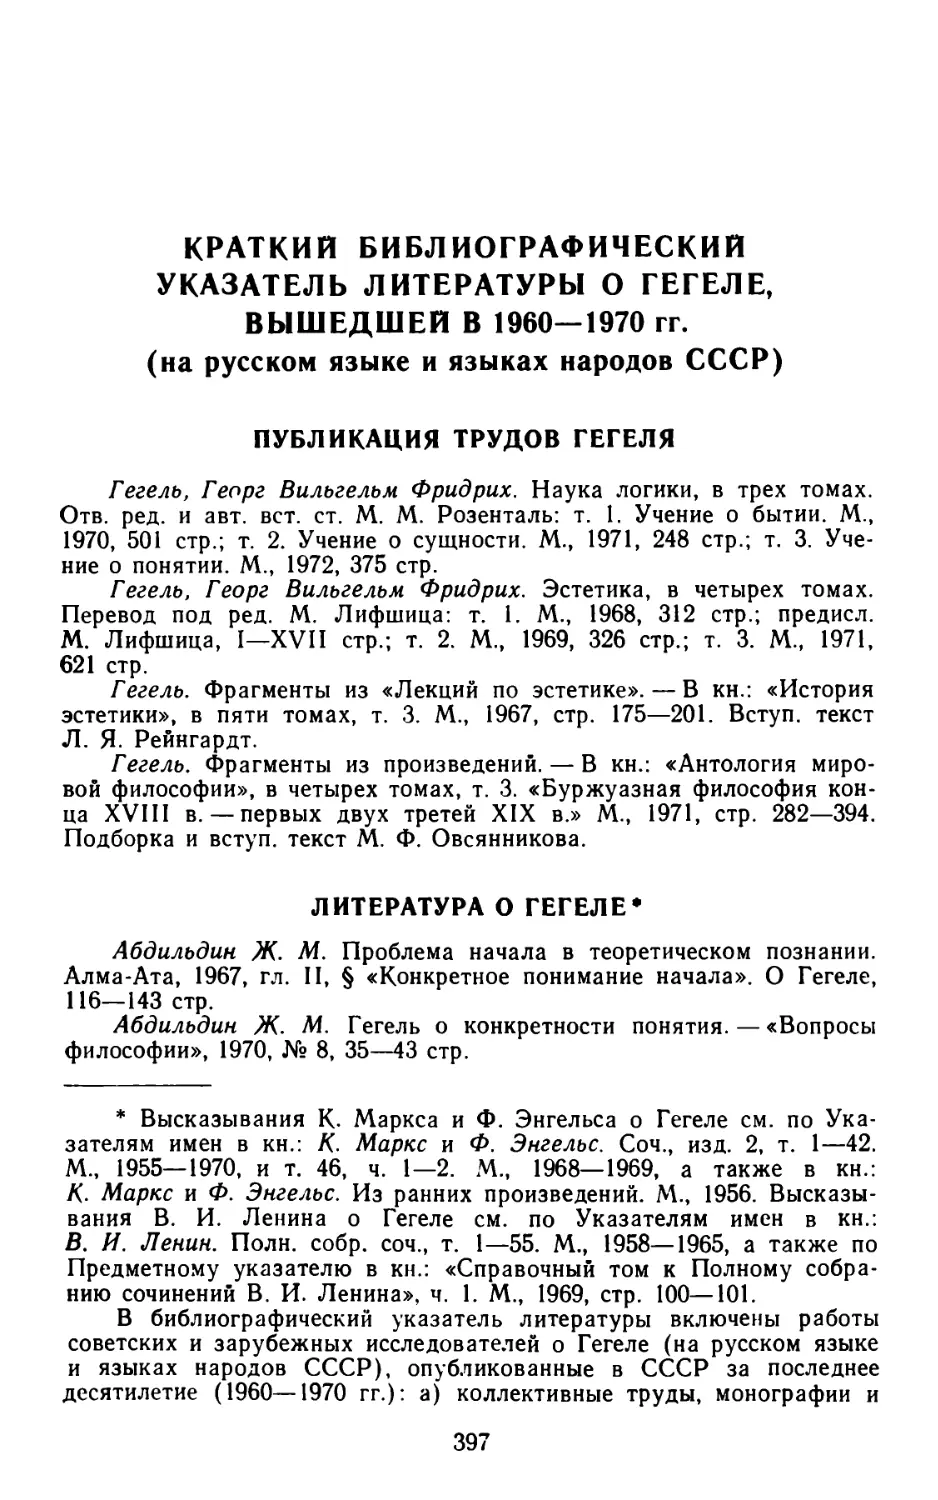 Краткий библиографический указатель литературы о Гегеле, вышедшей в 1960-1970 гг.